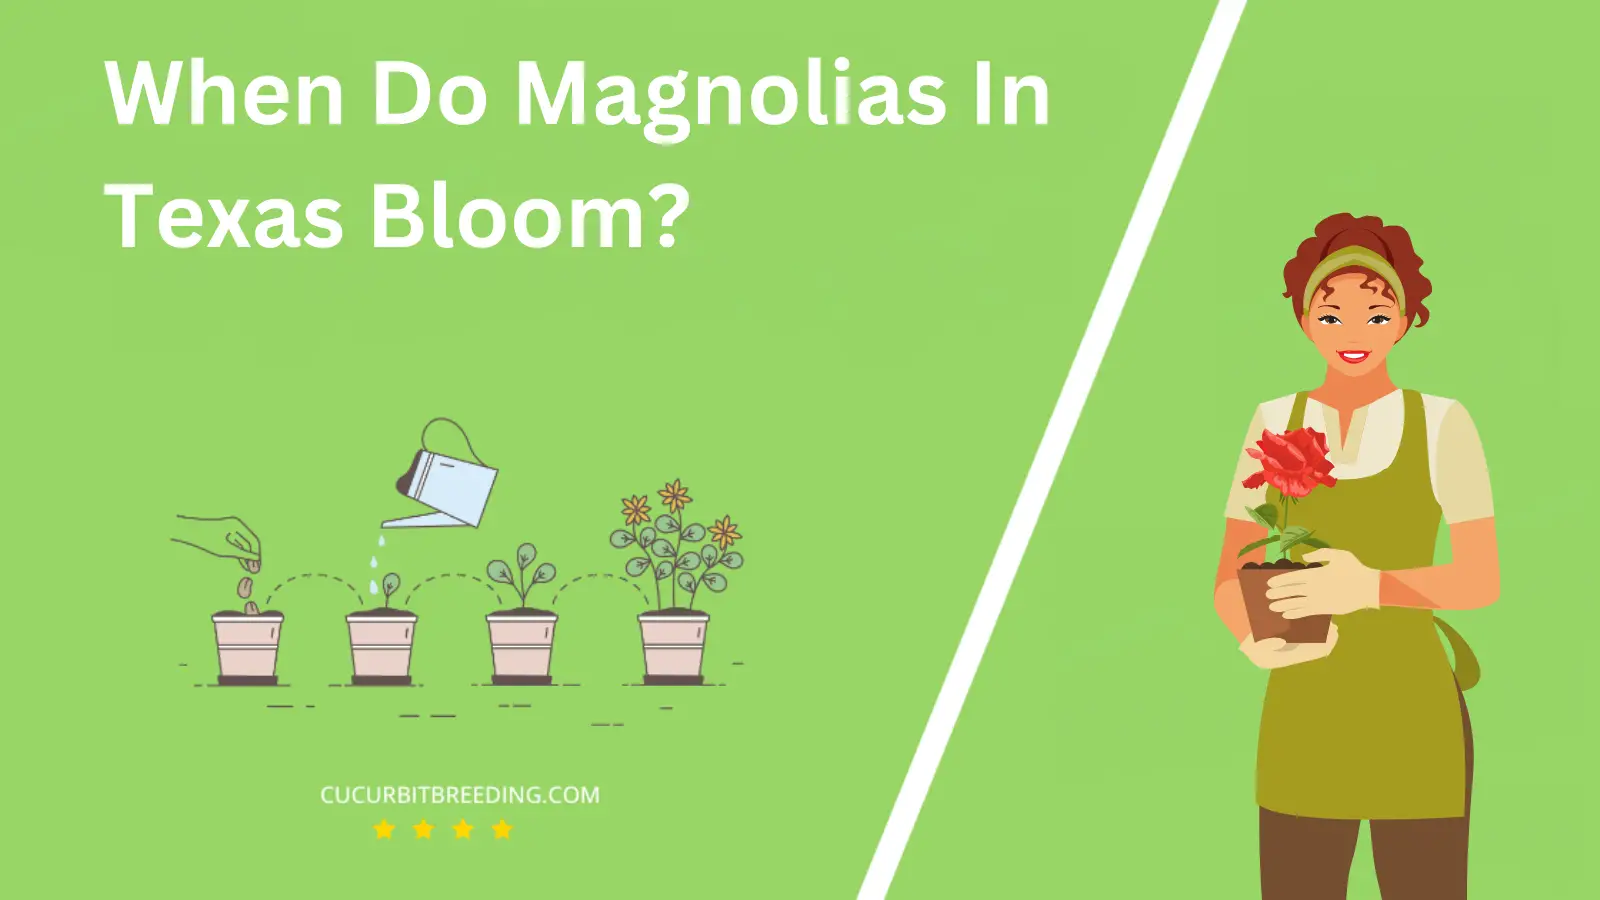 When Do Magnolias In Texas Bloom?